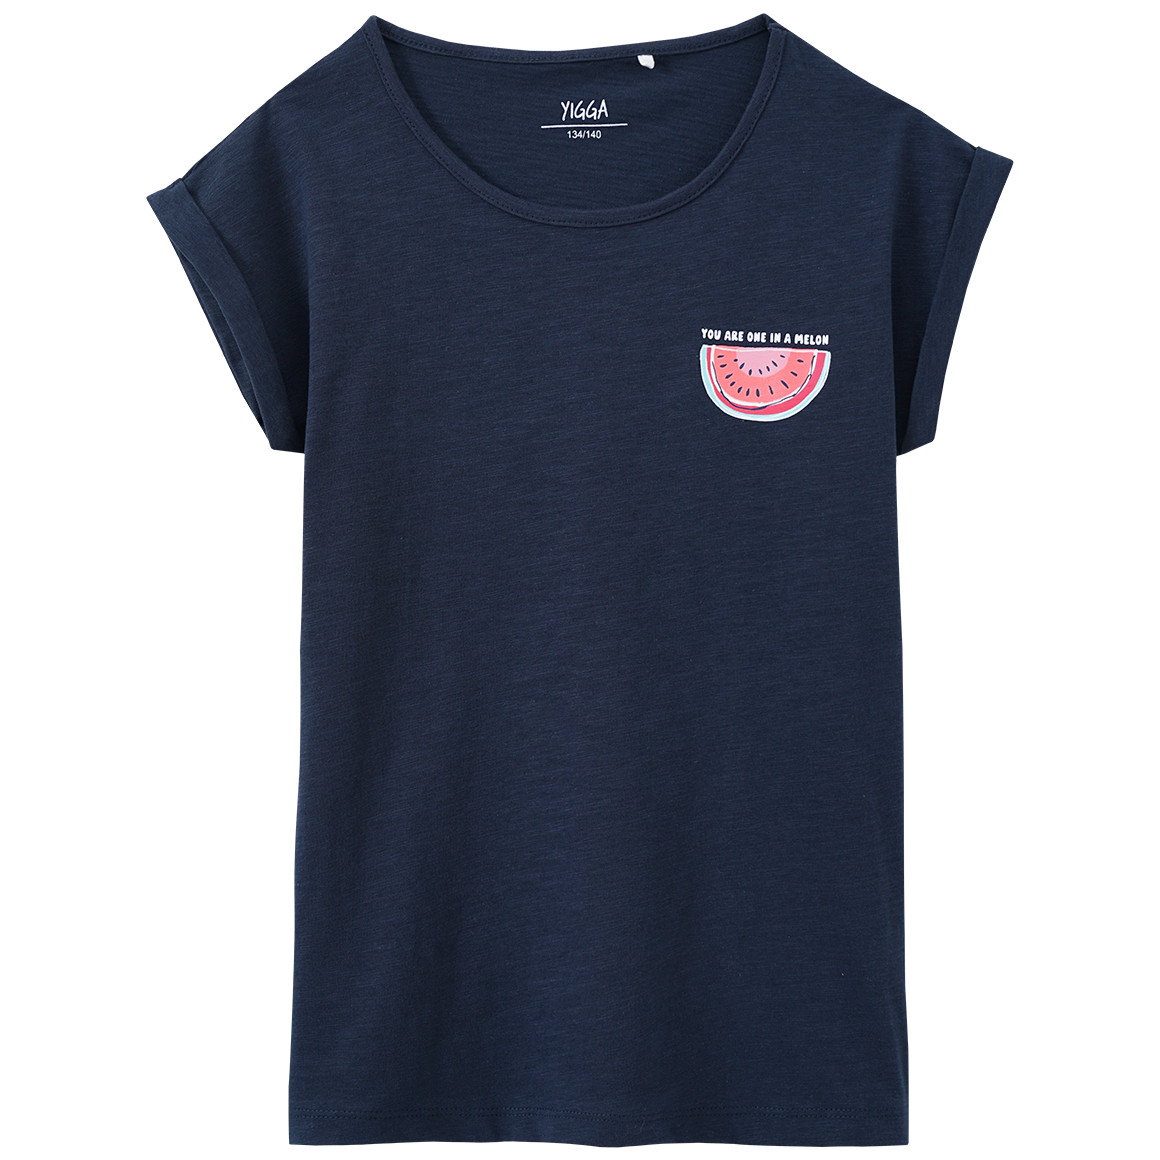 Mädchen T-Shirt mit Melonen-Print von Yigga